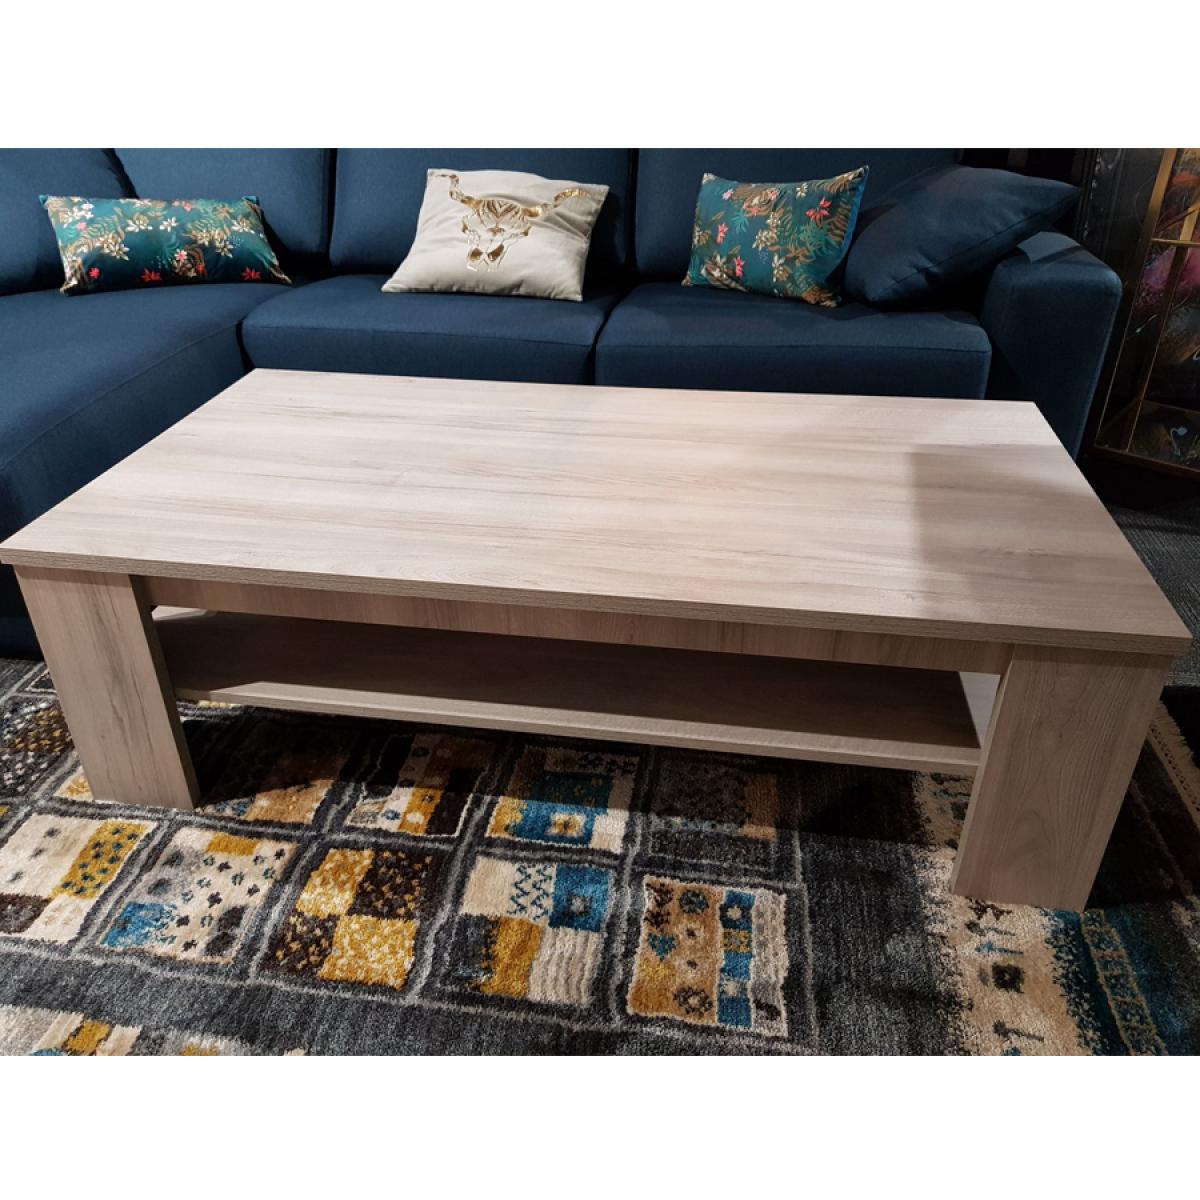 Kasalinea - Table basse contemporaine couleur chêne gris SOPHIE - Tables à manger